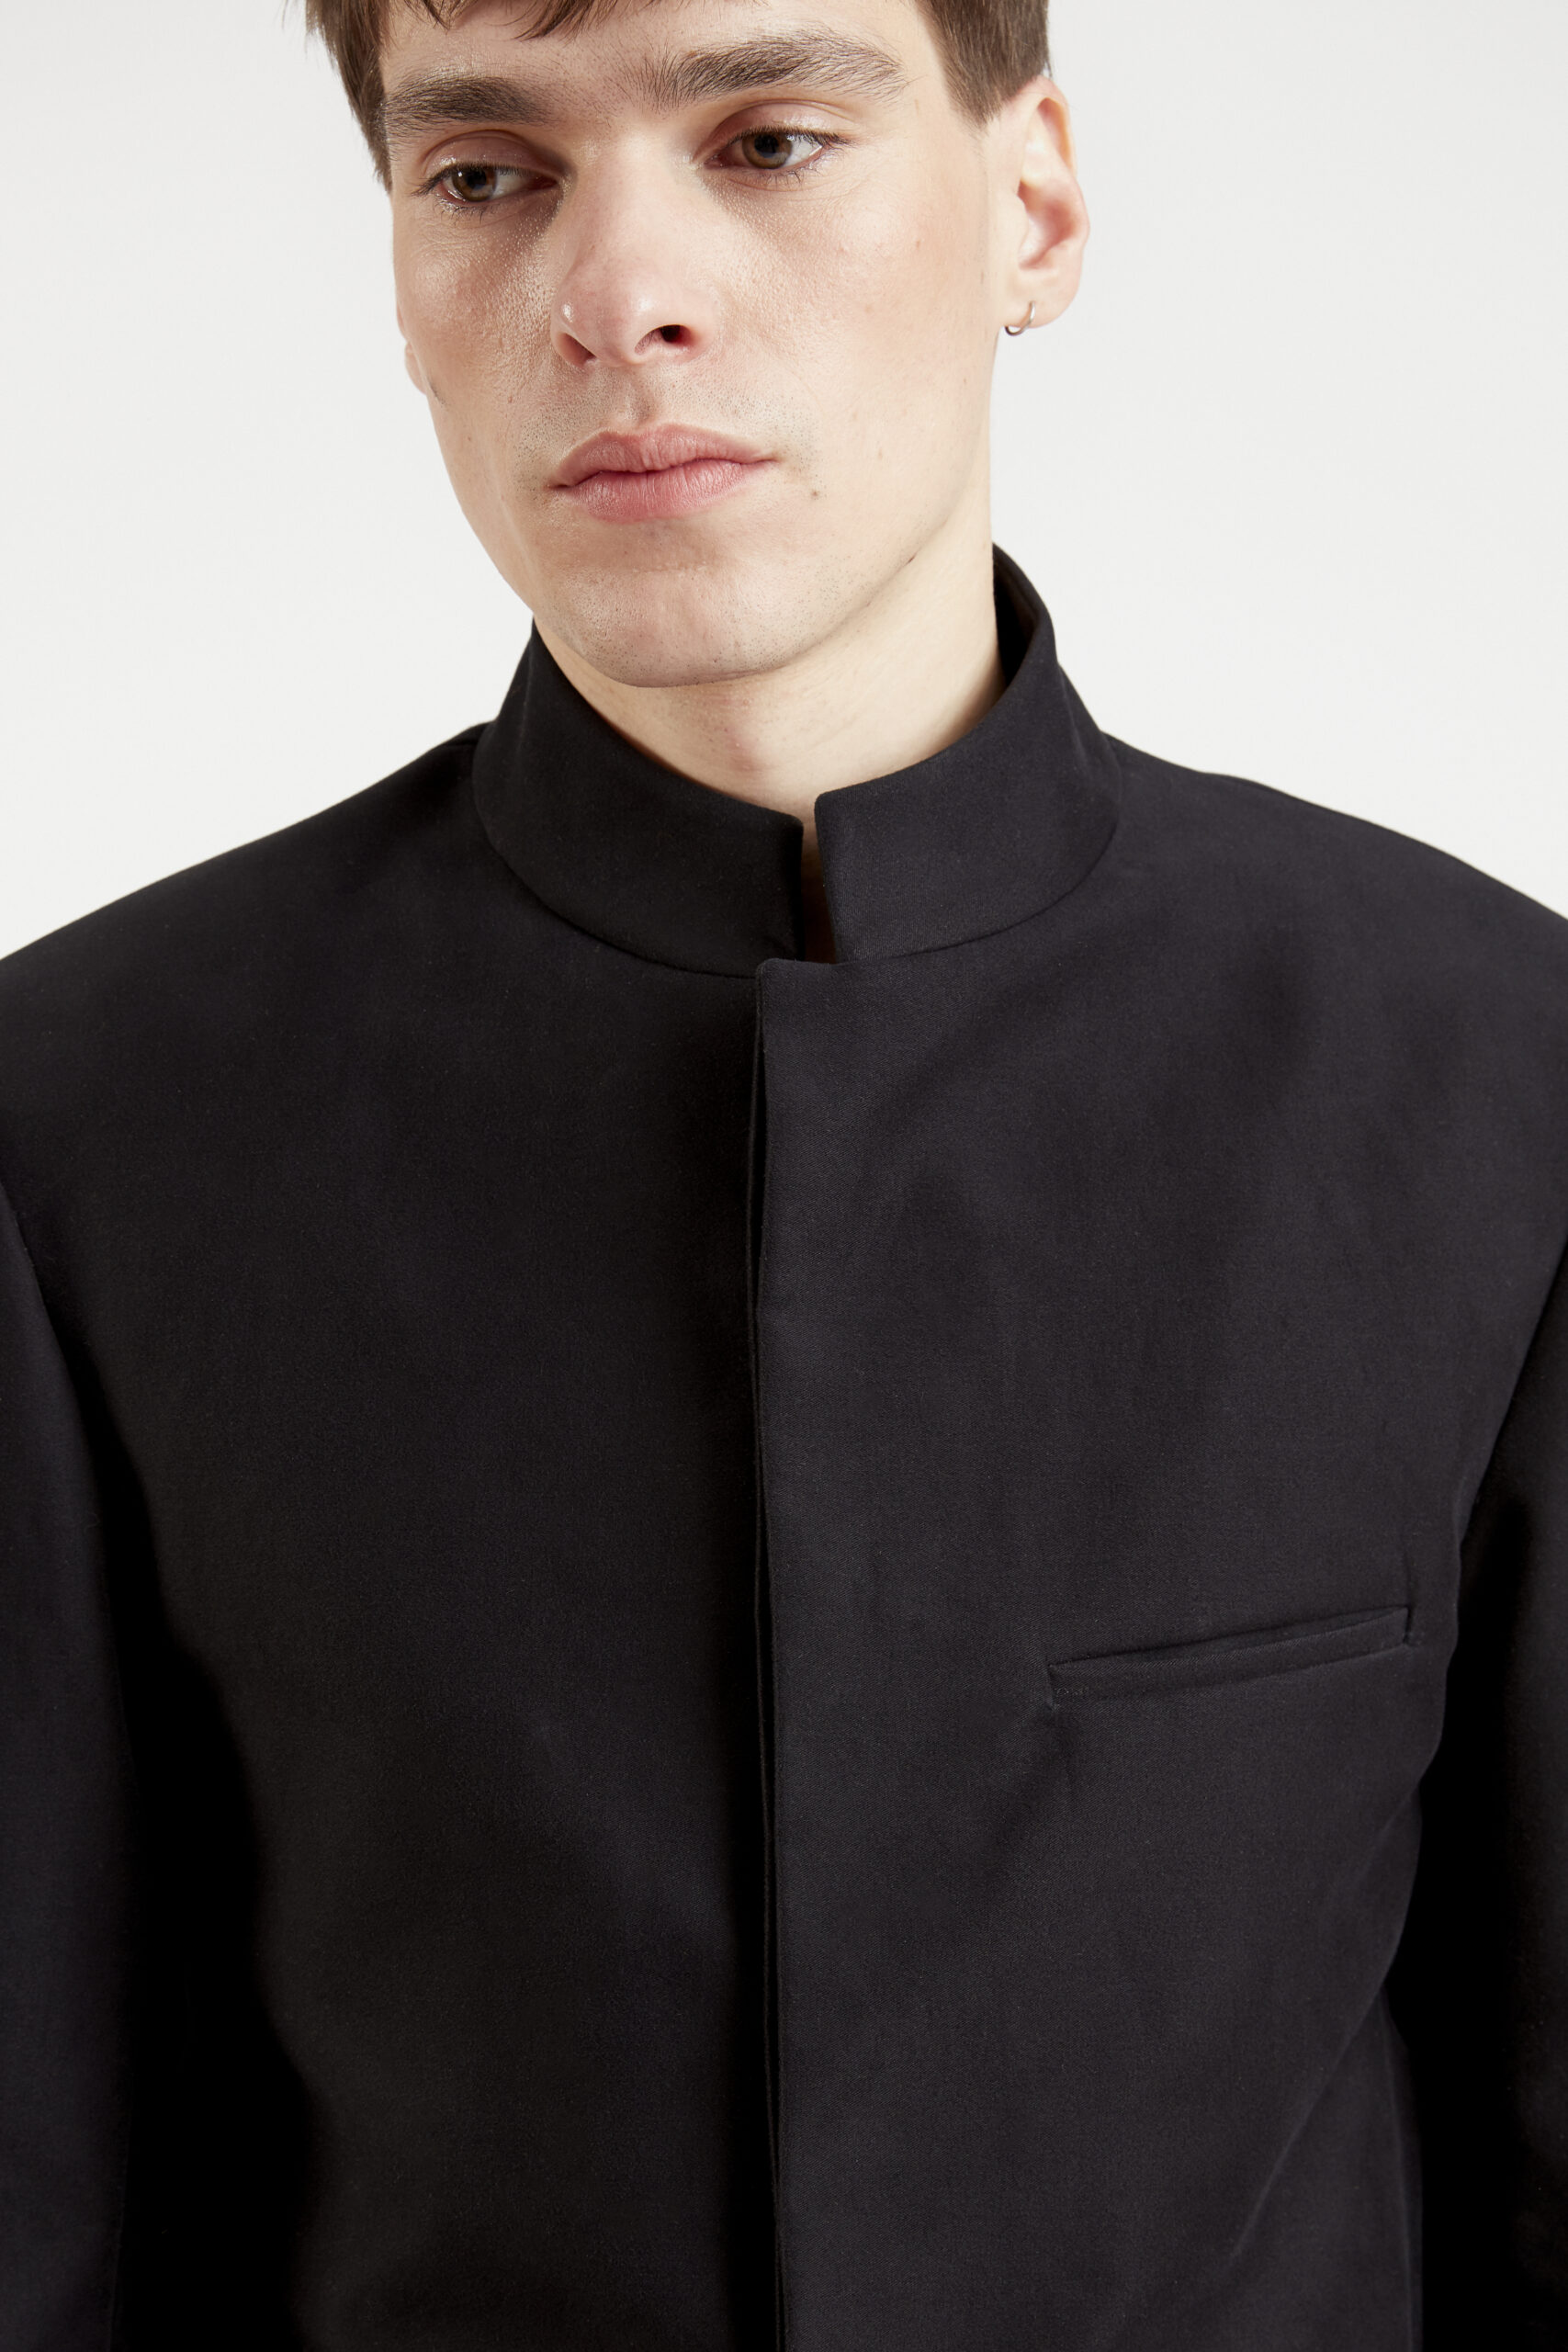 mizu-courte-veste-costume-col-officier-coton-japonais-noir-minimaliste-tendance-fashion-design-hiver-29thoctober